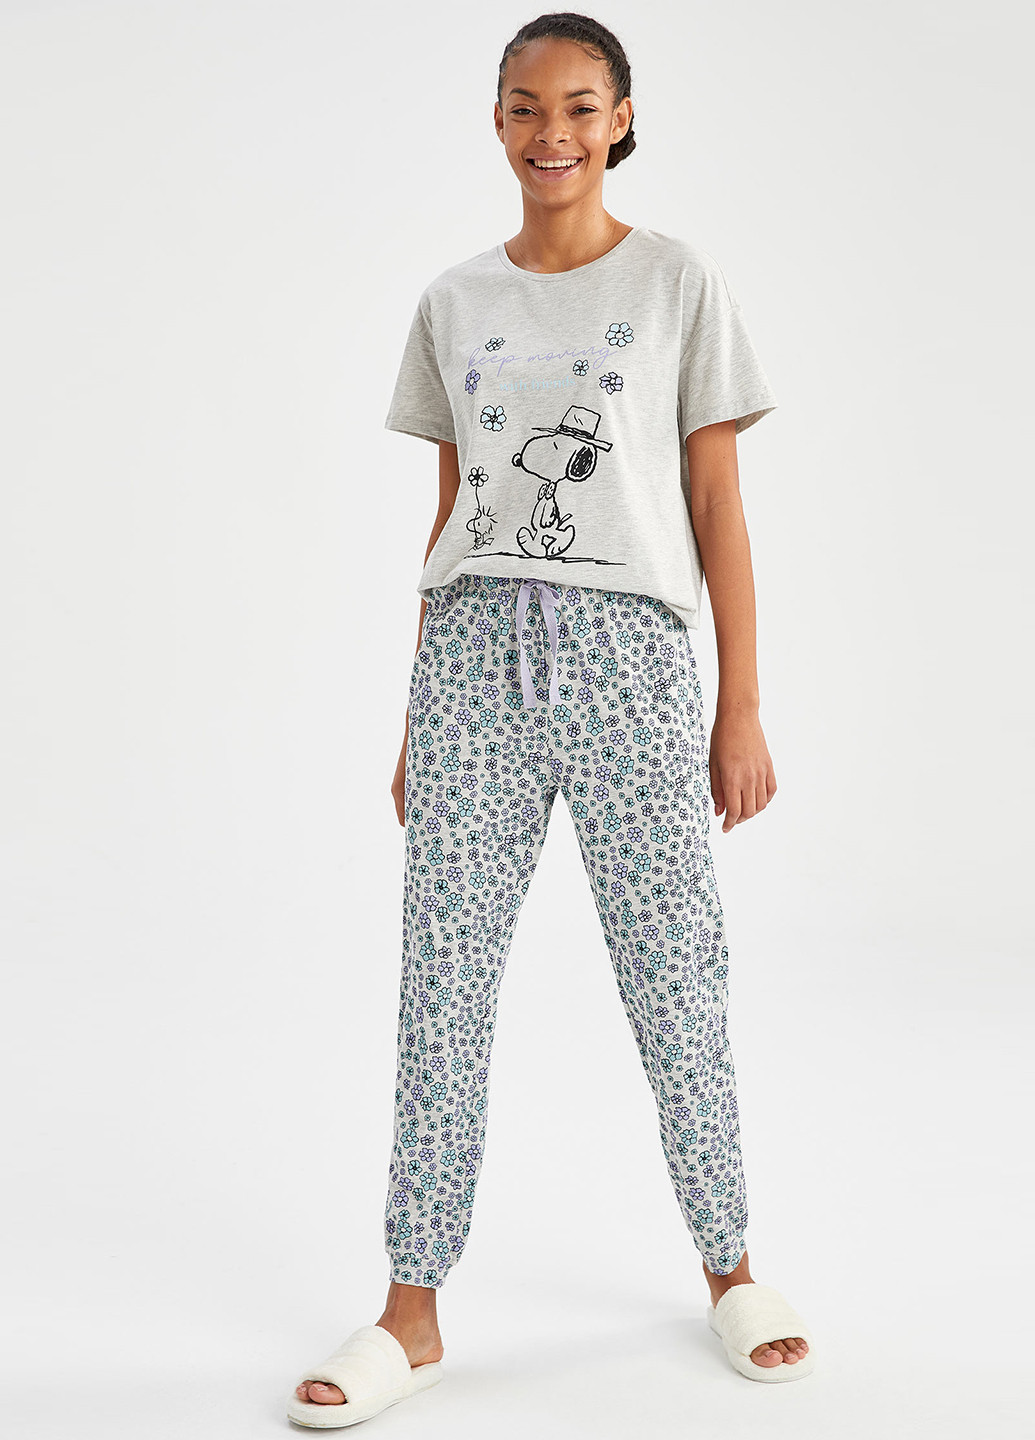 Комбинированная всесезон snoopy футболка + брюки DeFacto Трикотажный комплект